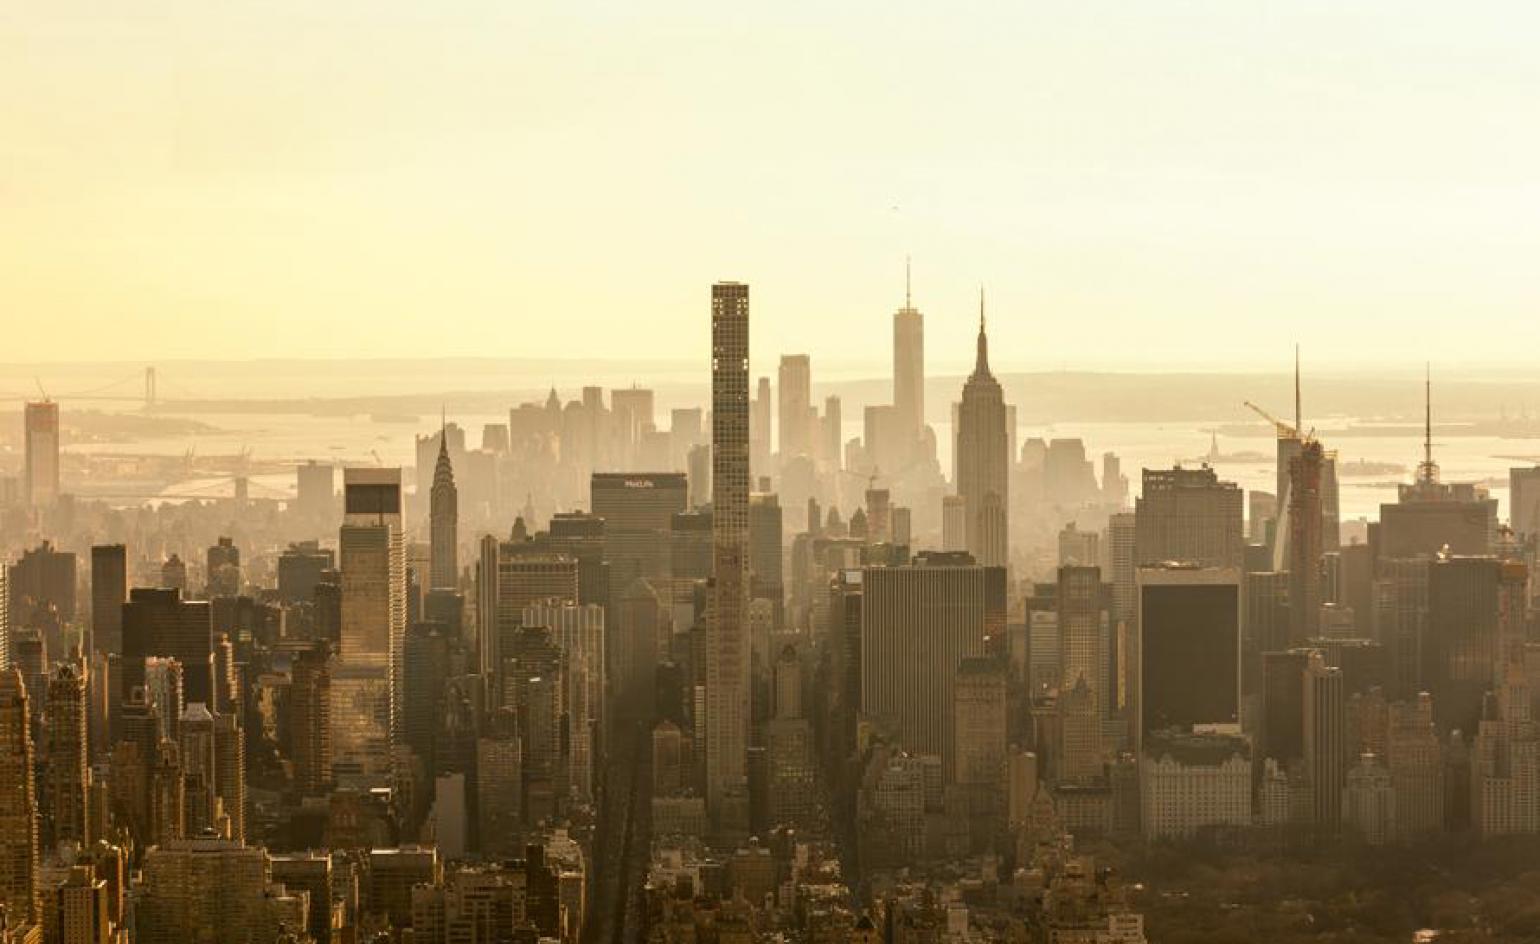 New York wins Wallpaper* Design Awards for Best City 2020. Wallpaper*